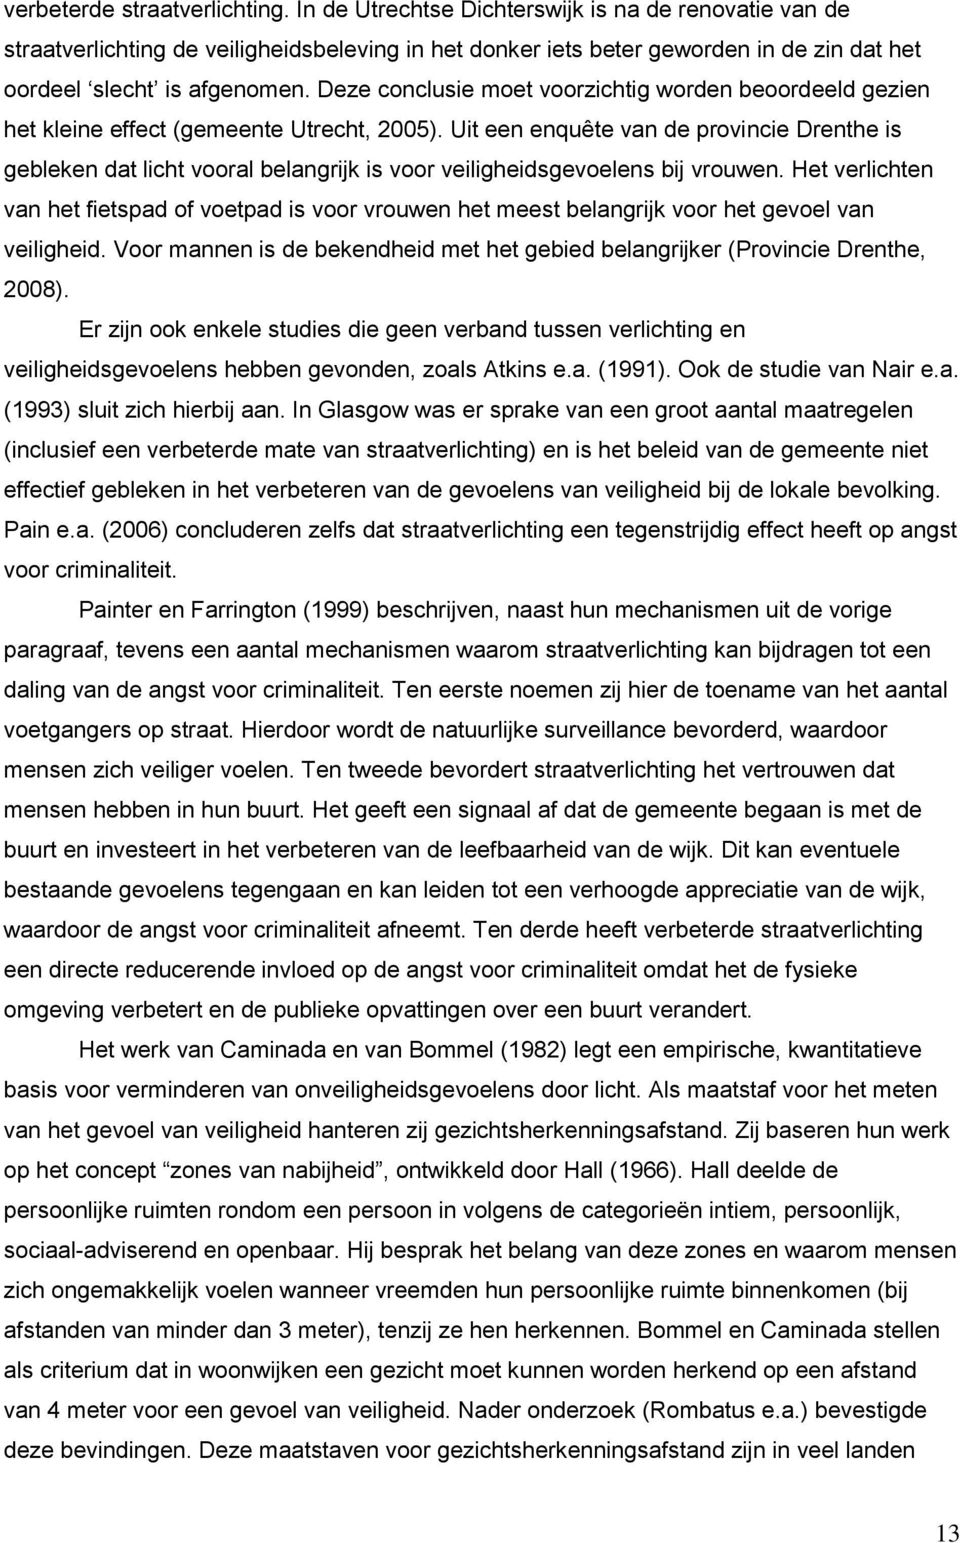 Deze conclusie moet voorzichtig worden beoordeeld gezien het kleine effect (gemeente Utrecht, 2005).